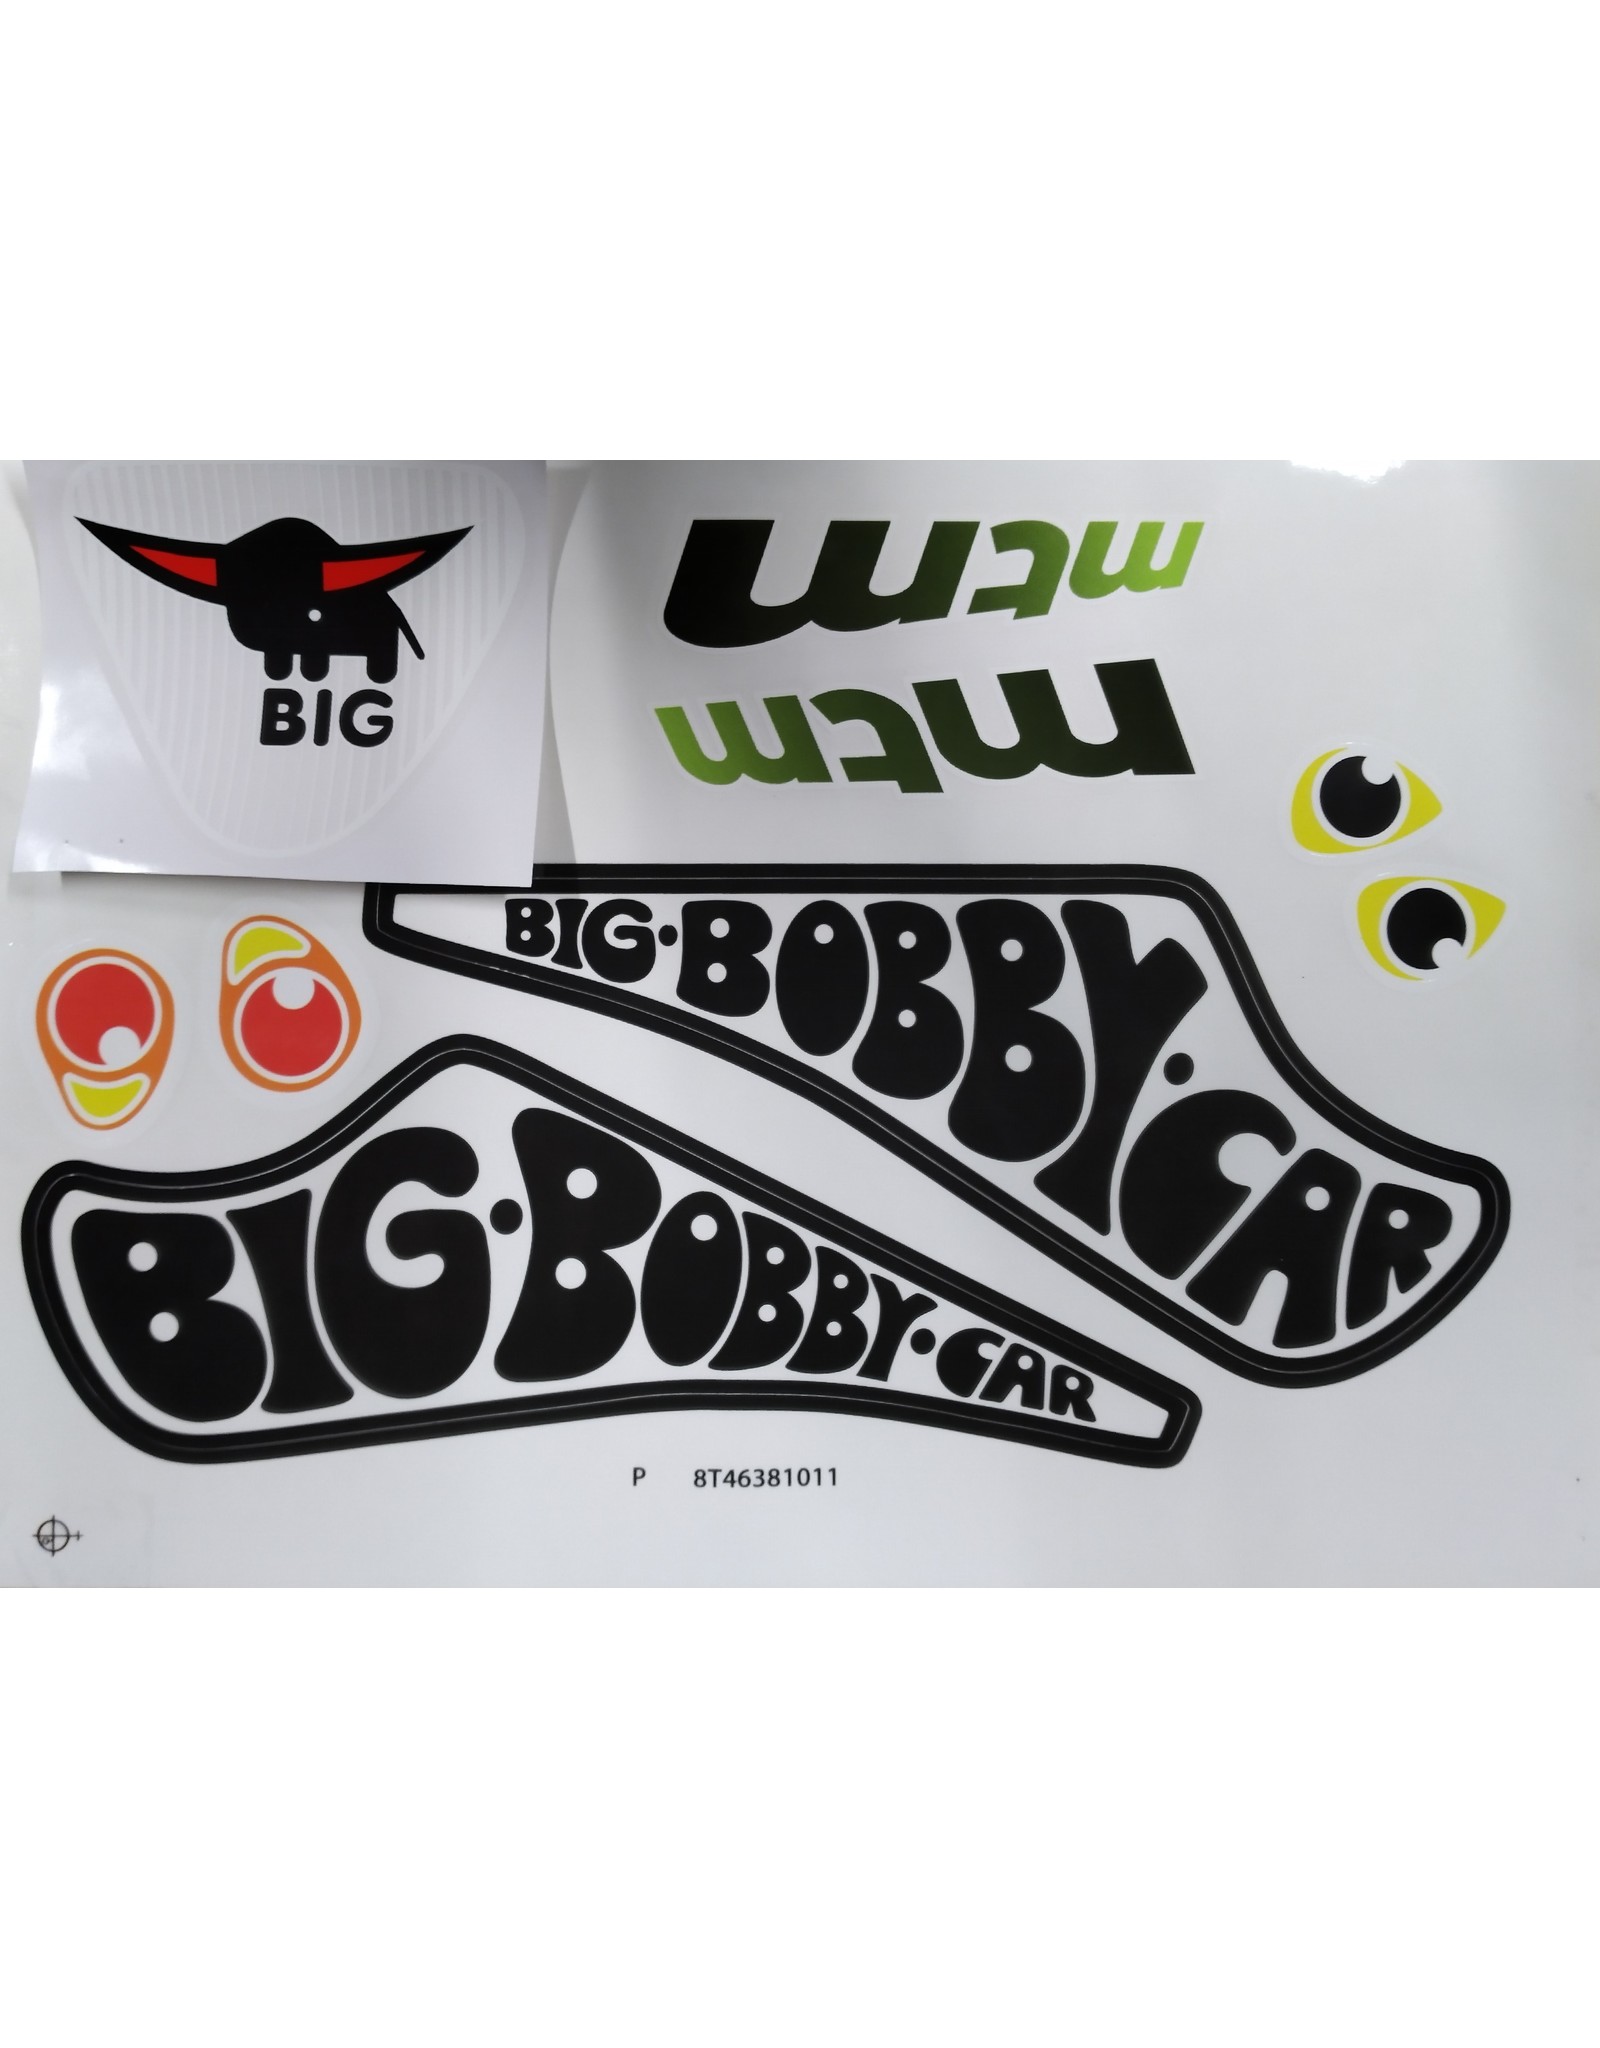 BIG BIG Bobby Car classic Racer sticker set